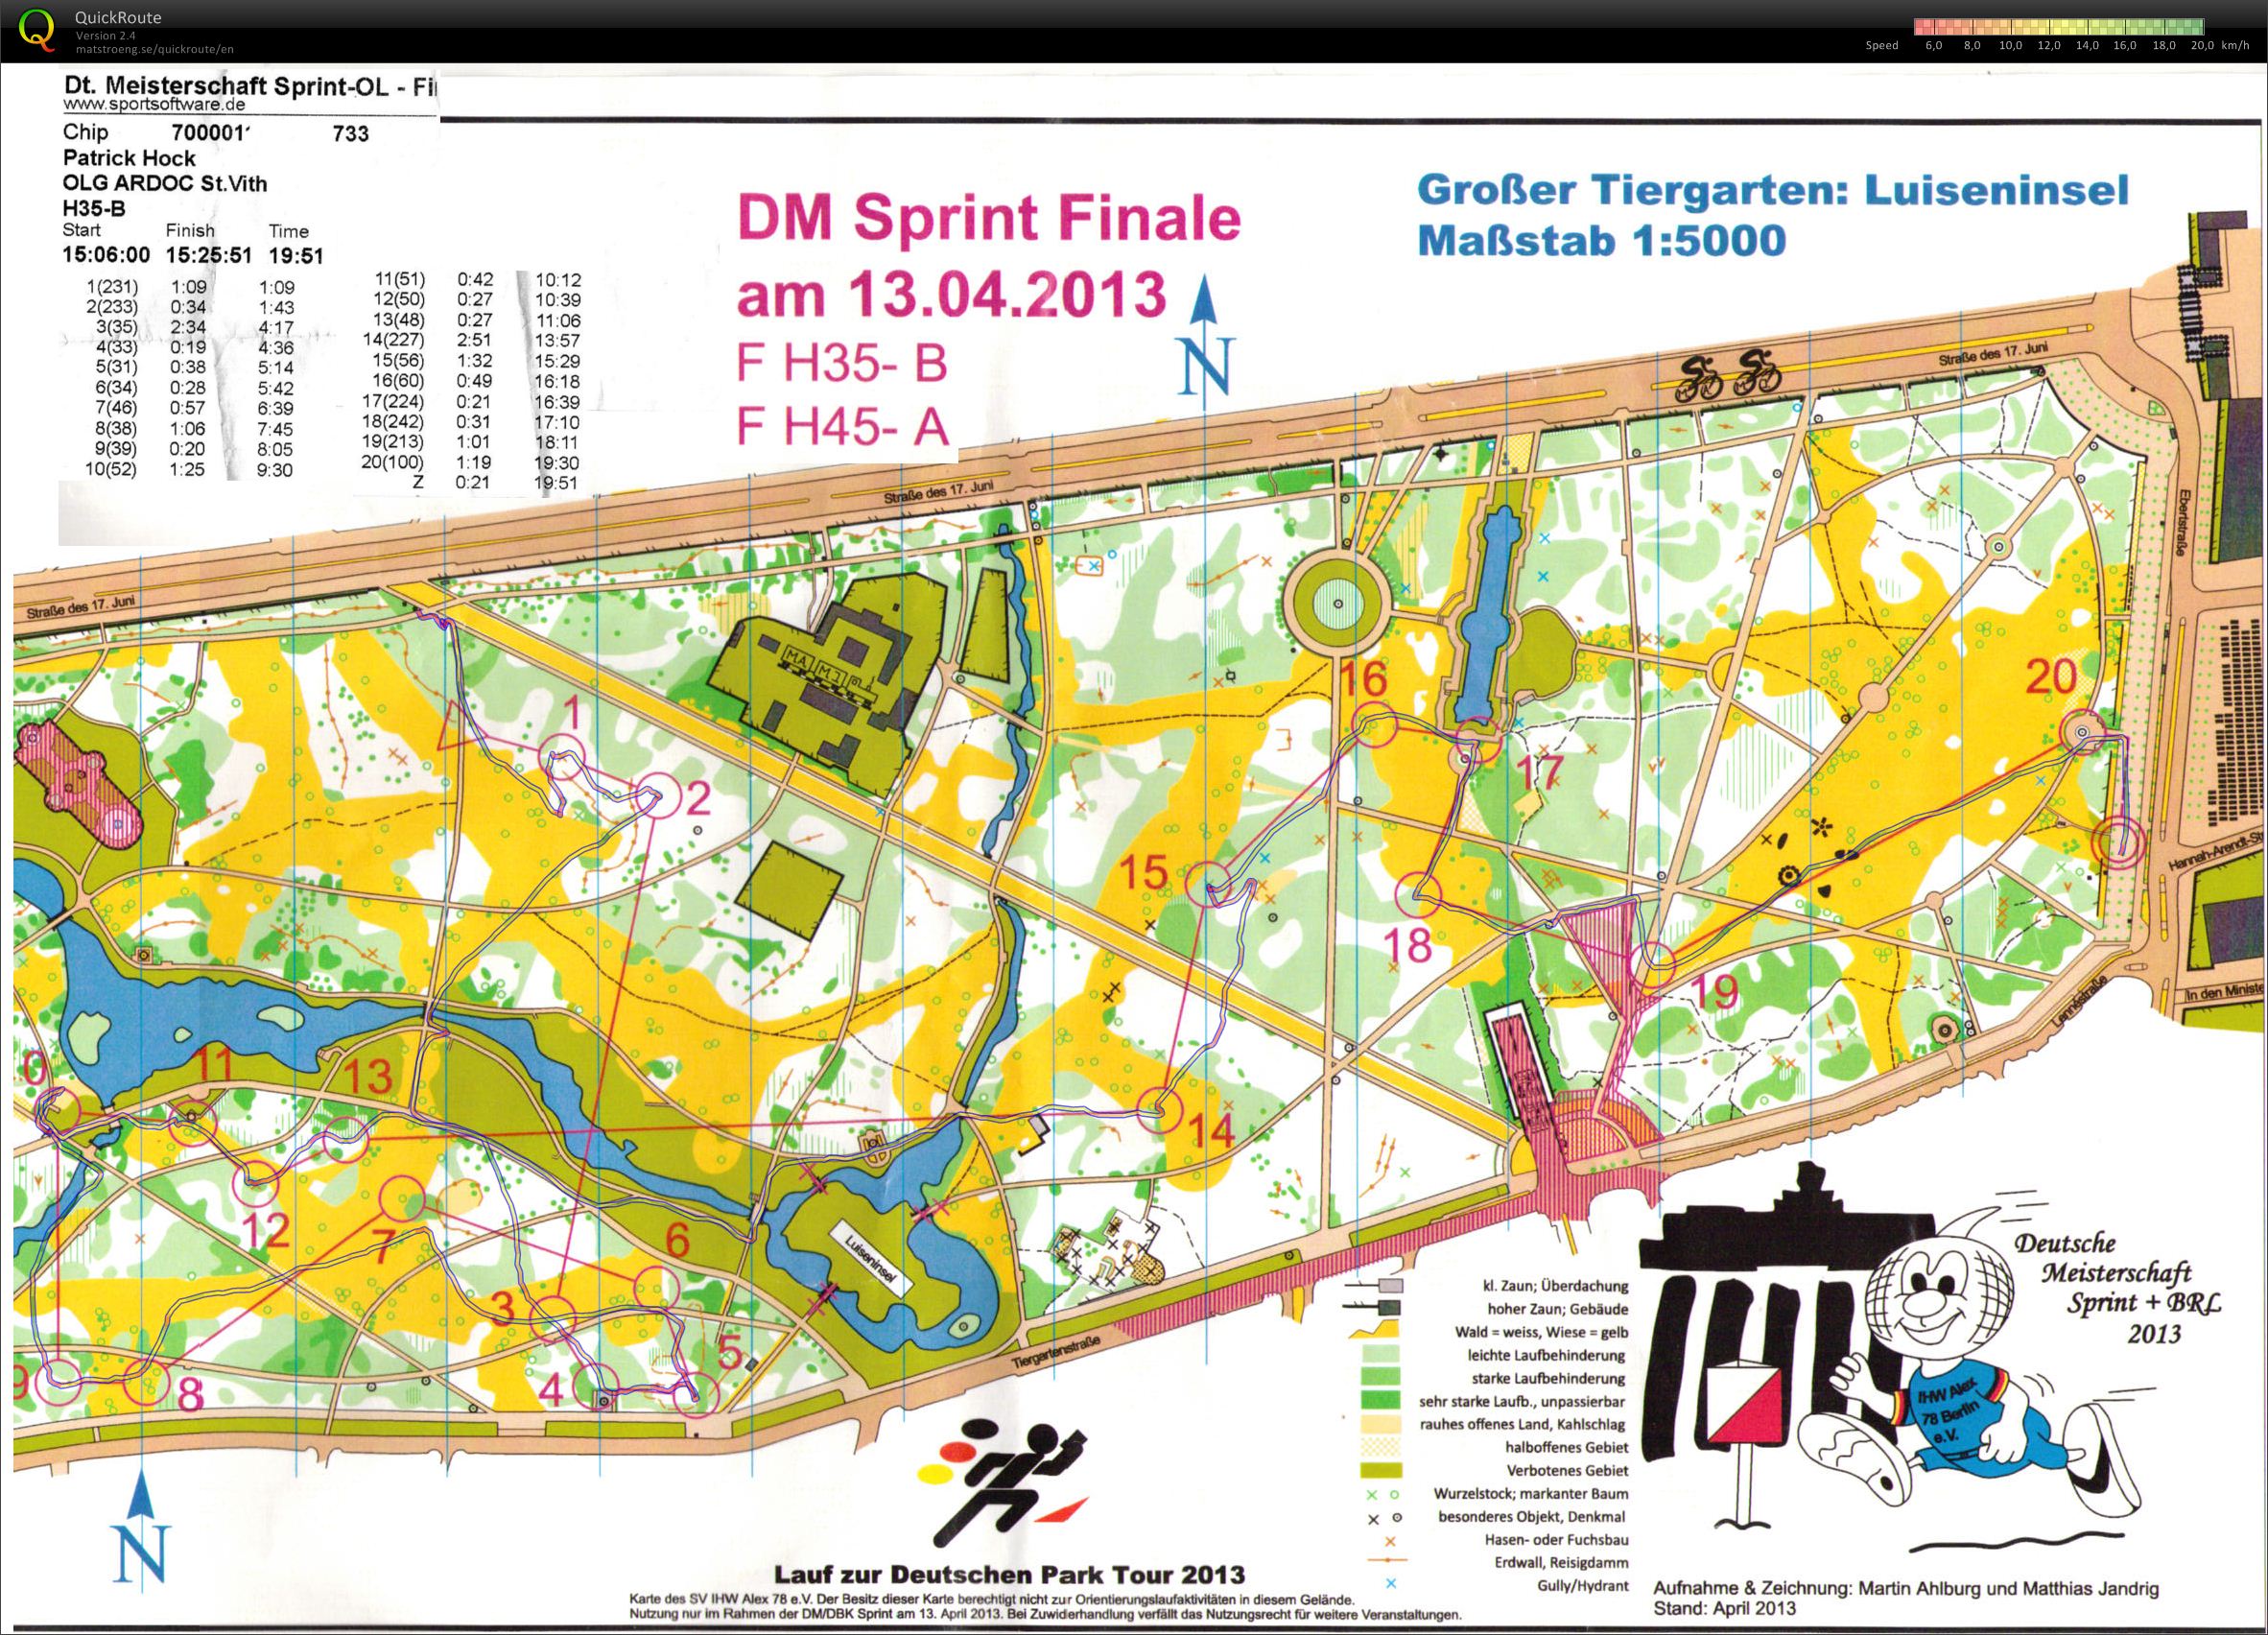 DM Sprint Finale - Berlin (13.04.2013)